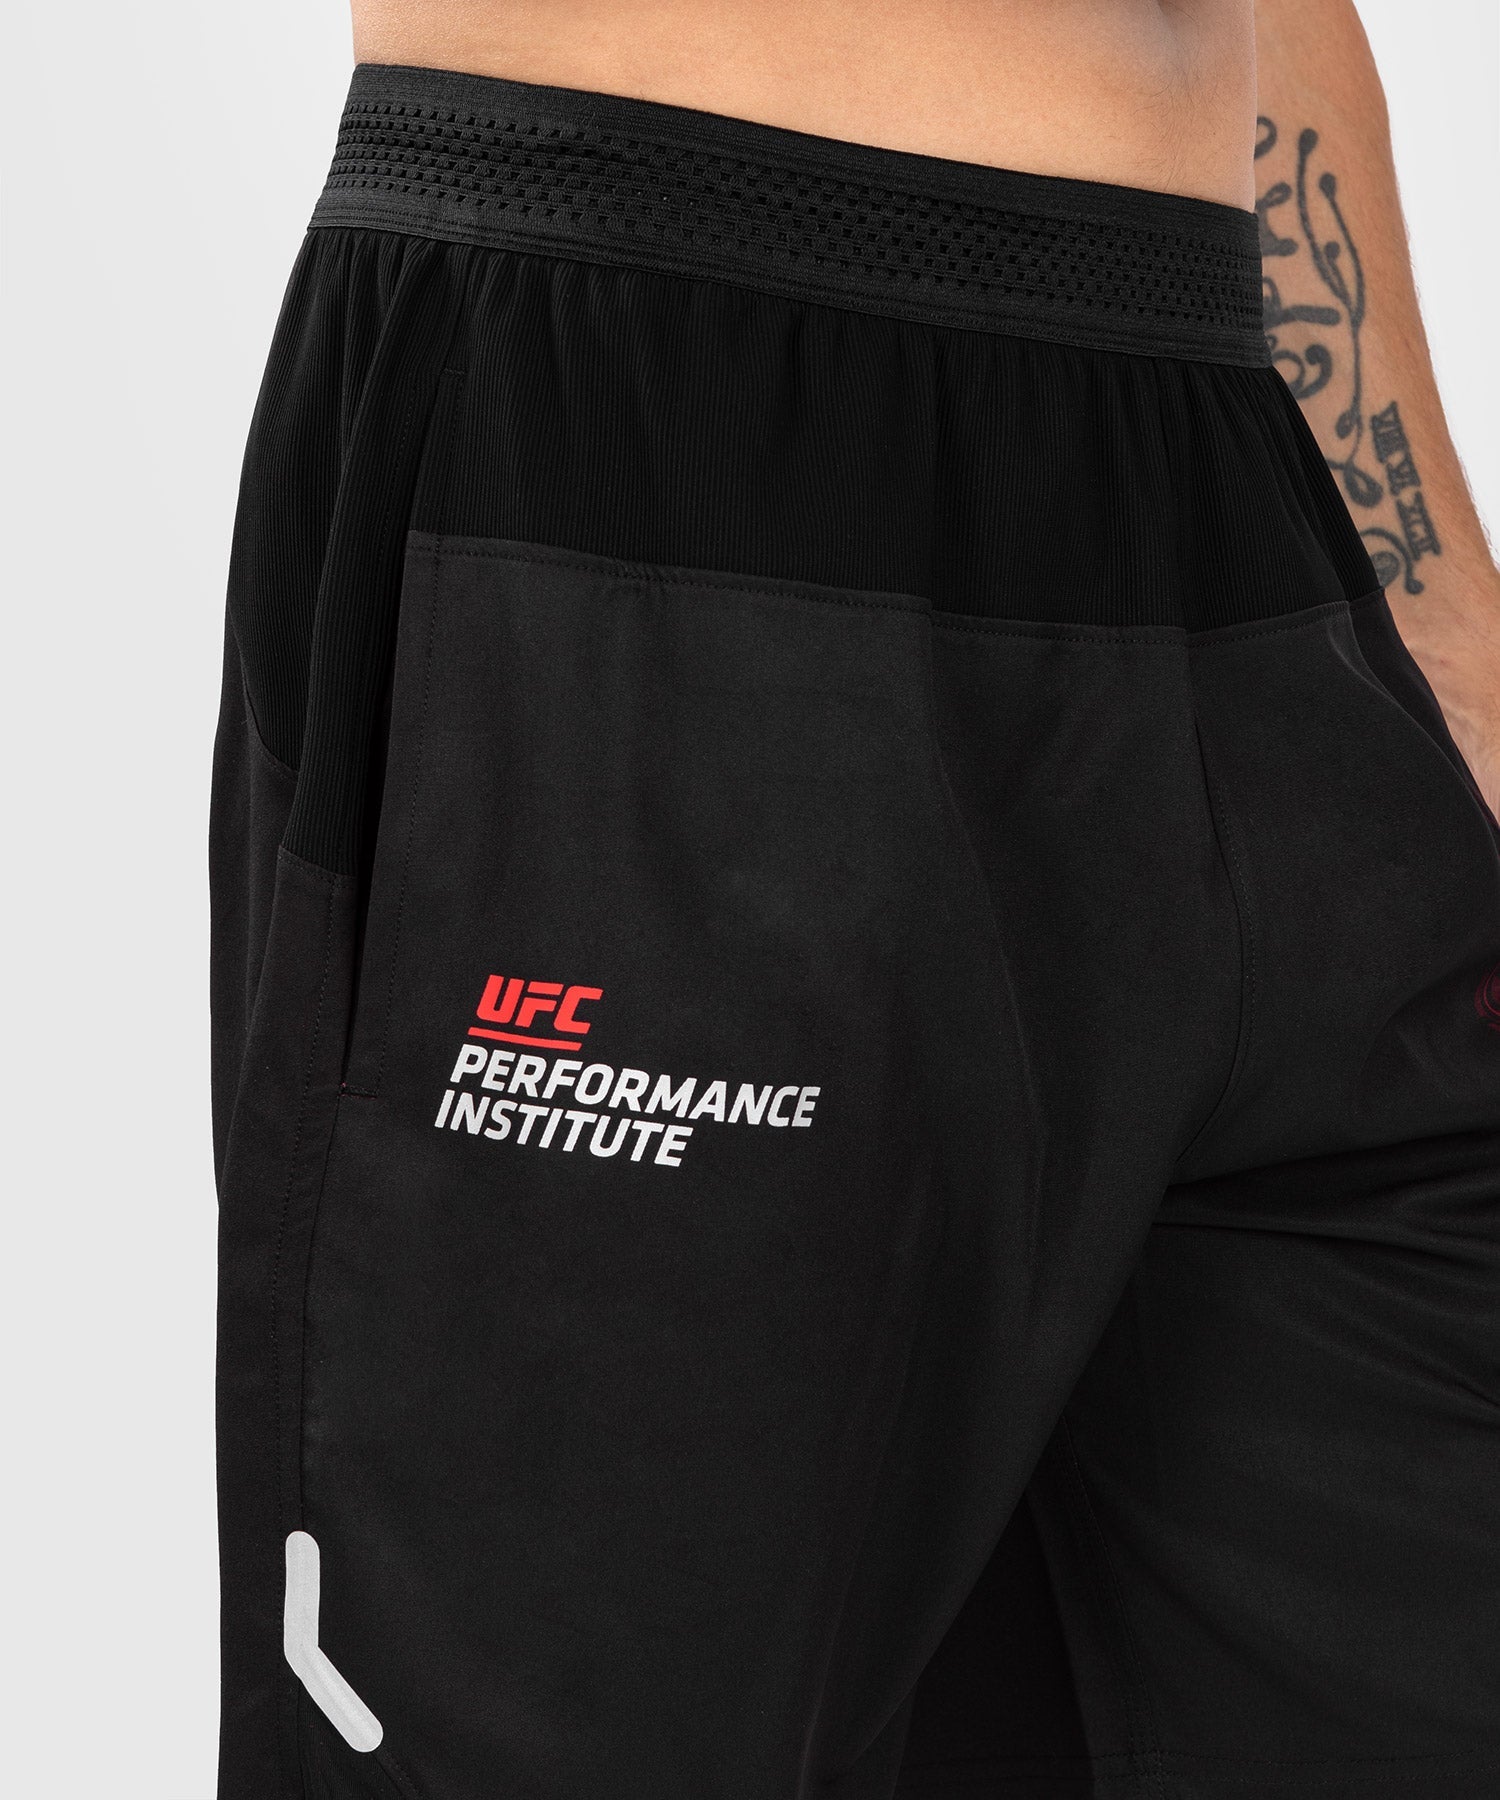 UFC Venum Performance Institute 2.0 Men’s Performance Short - Black/Red